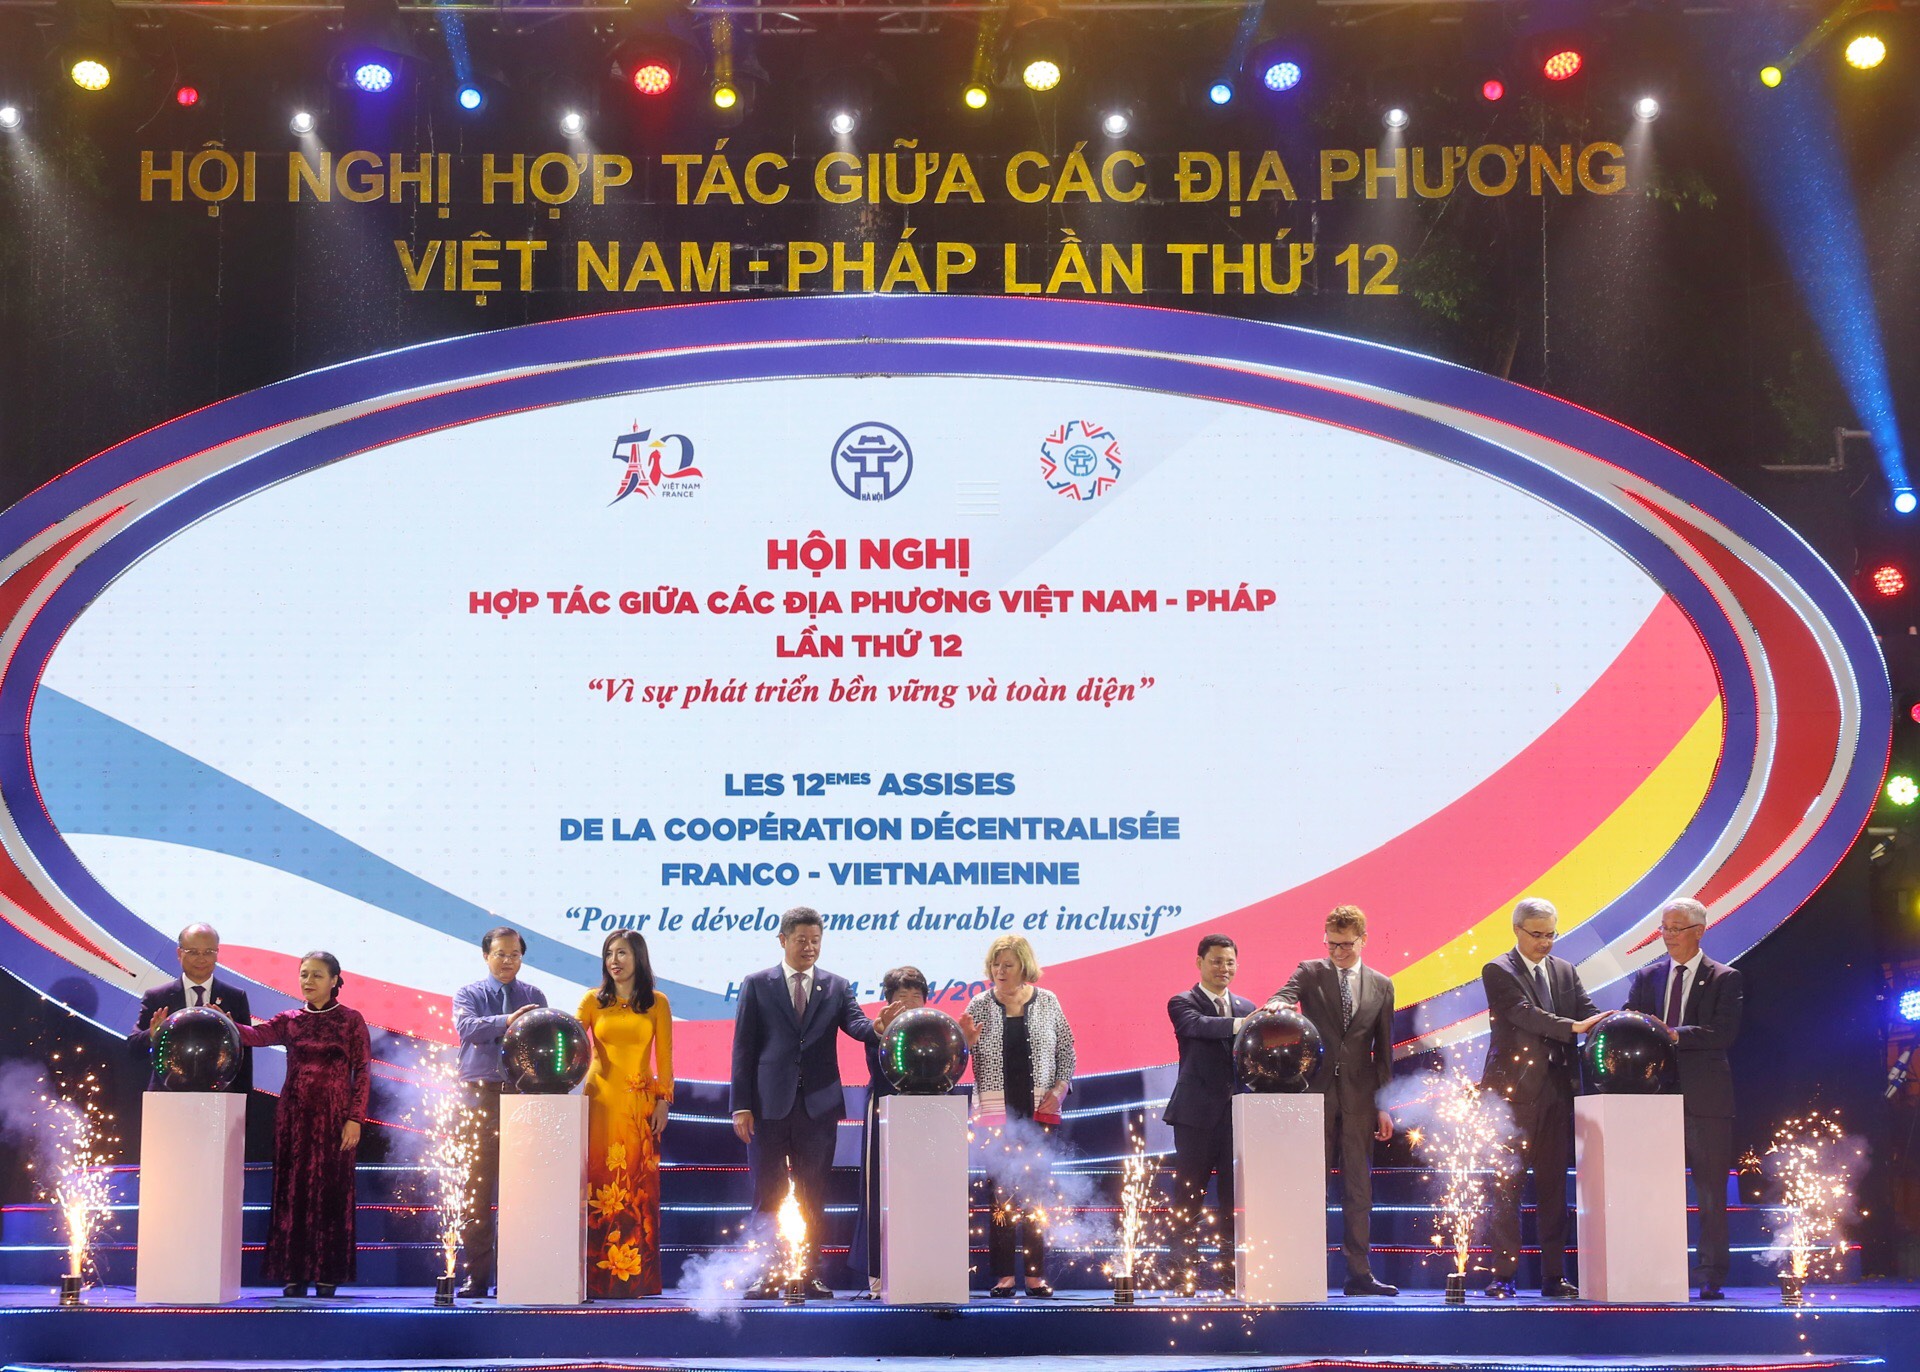 Điểm nhấn giao thoa văn hóa tại Không gian “Sắc màu Việt Nam” và Lễ hội “Dạo chơi nước Pháp” - 1